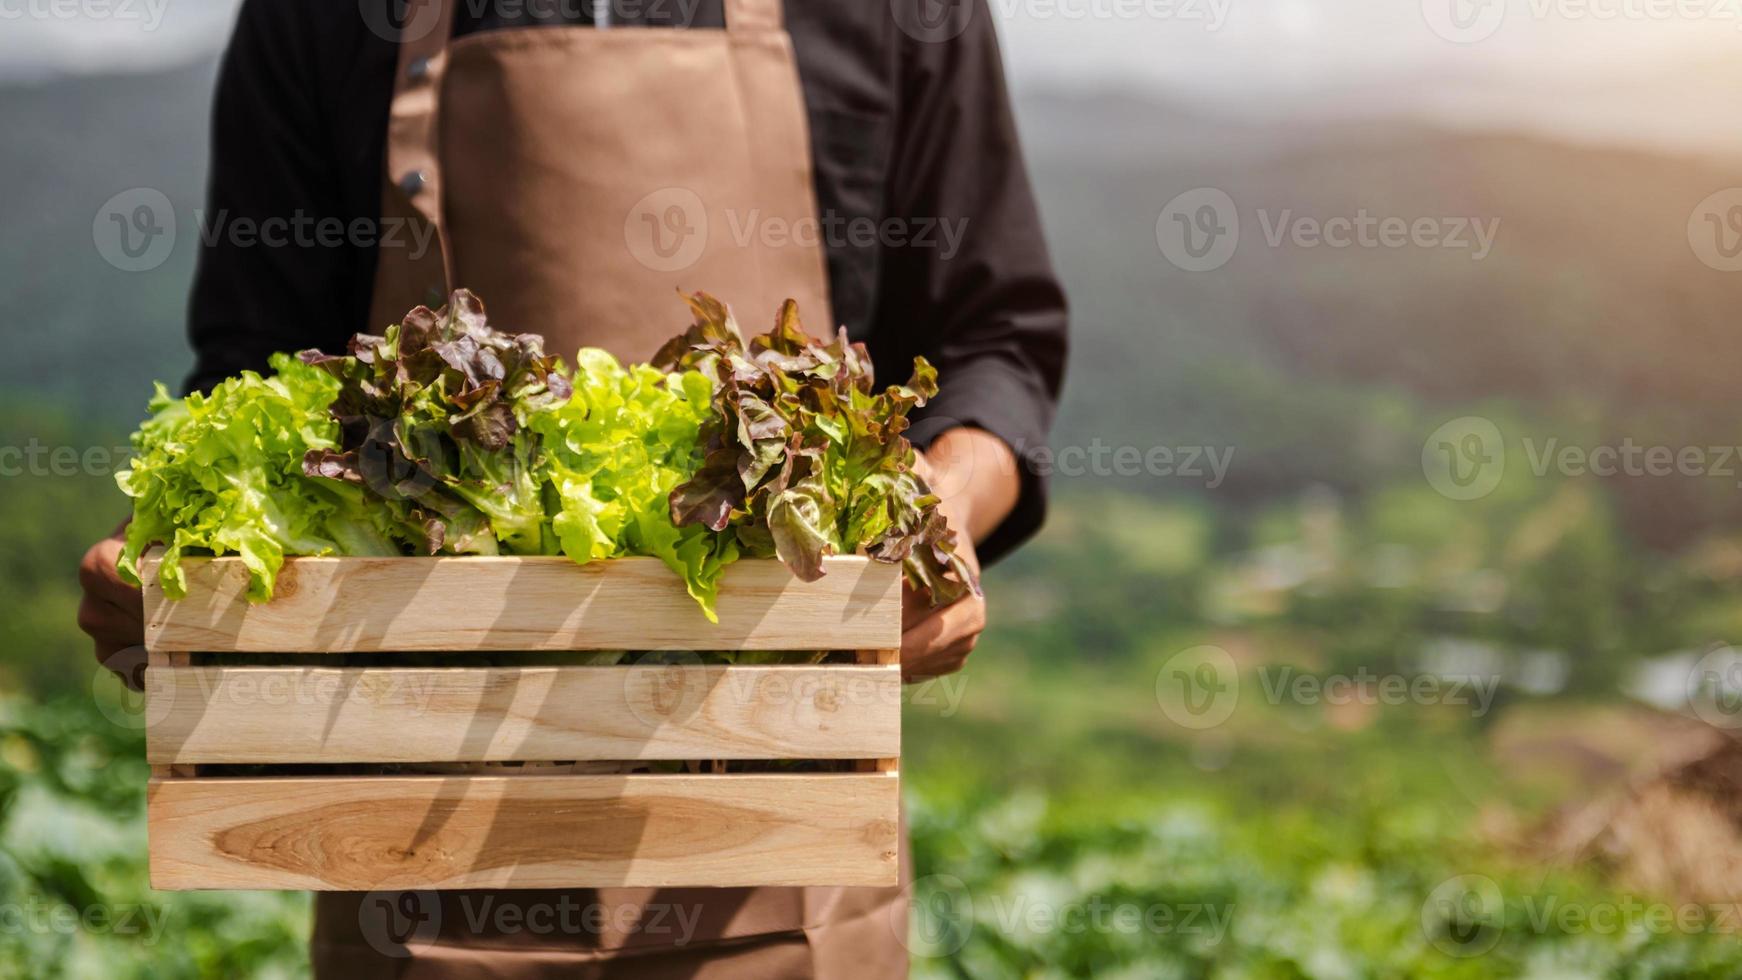 les agriculteurs récoltent à la main des salades de légumes frais dans des fermes de systèmes de plantes hydroponiques dans la serre pour les commercialiser. photo